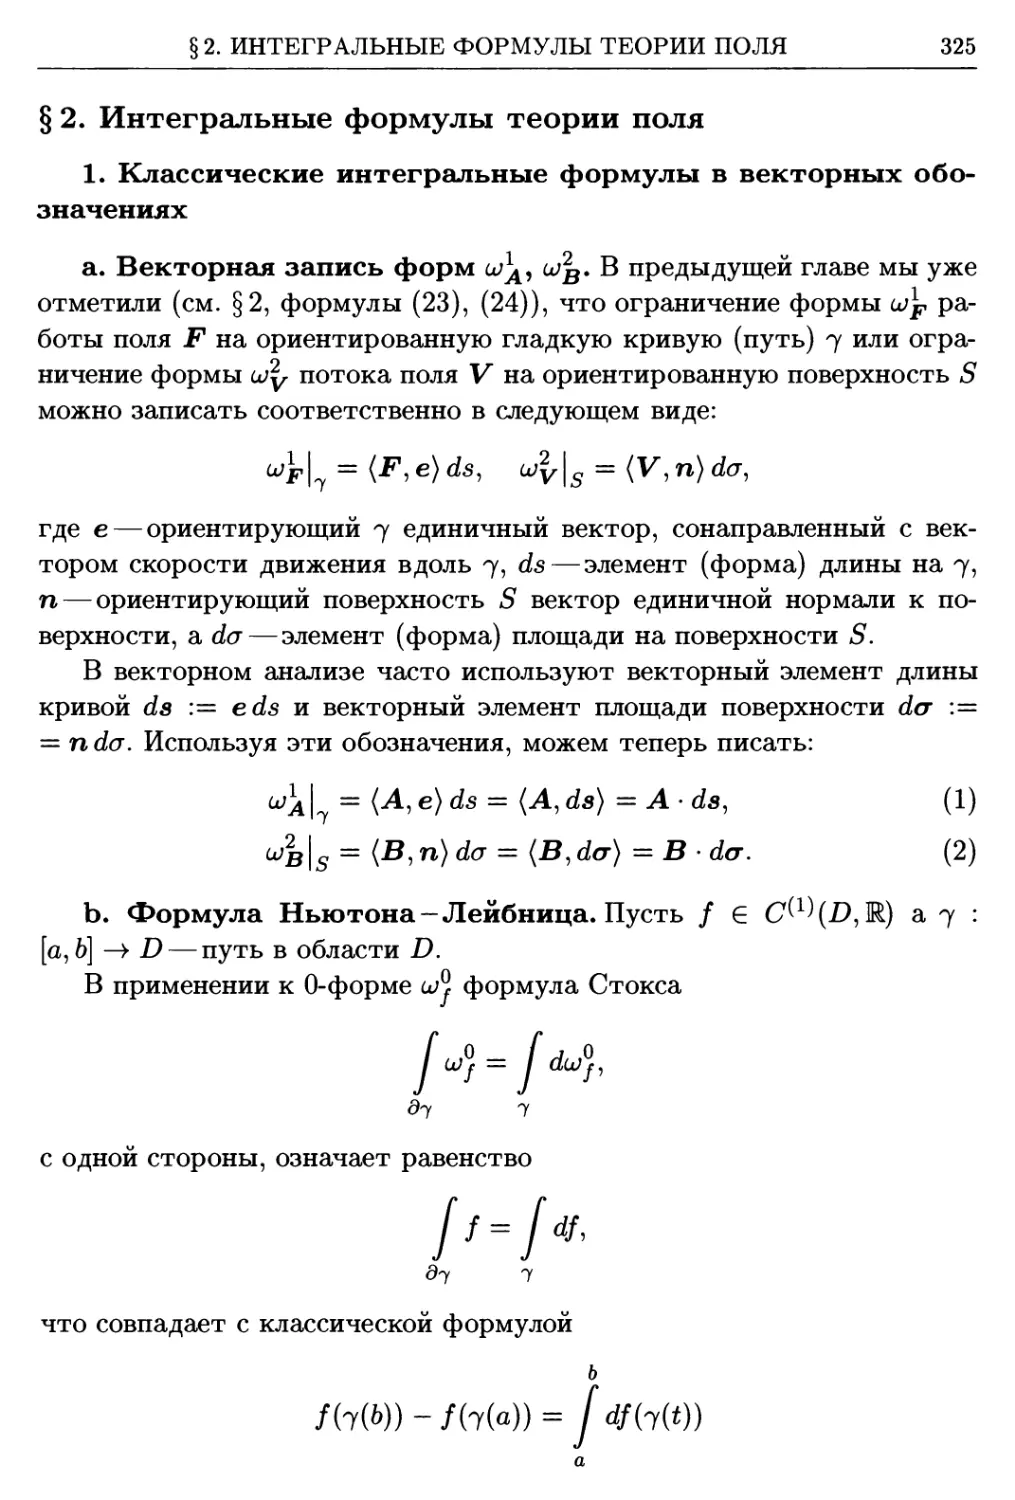 §2. Интегральные формулы теории поля